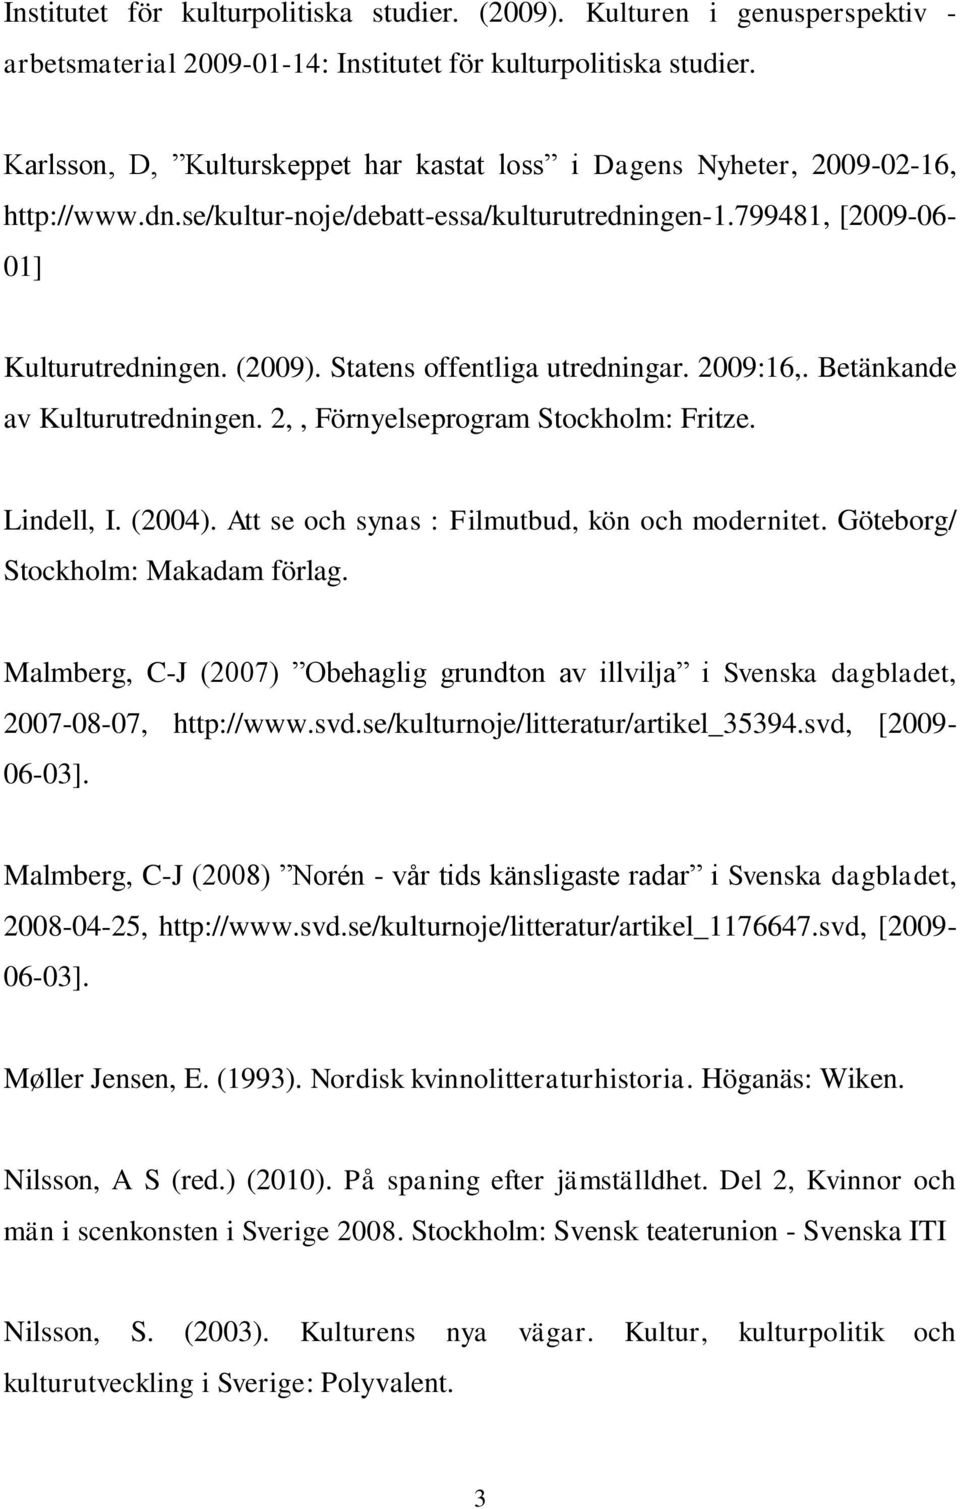 Statens offentliga utredningar. 2009:16,. Betänkande av Kulturutredningen. 2,, Förnyelseprogram Stockholm: Fritze. Lindell, I. (2004). Att se och synas : Filmutbud, kön och modernitet.